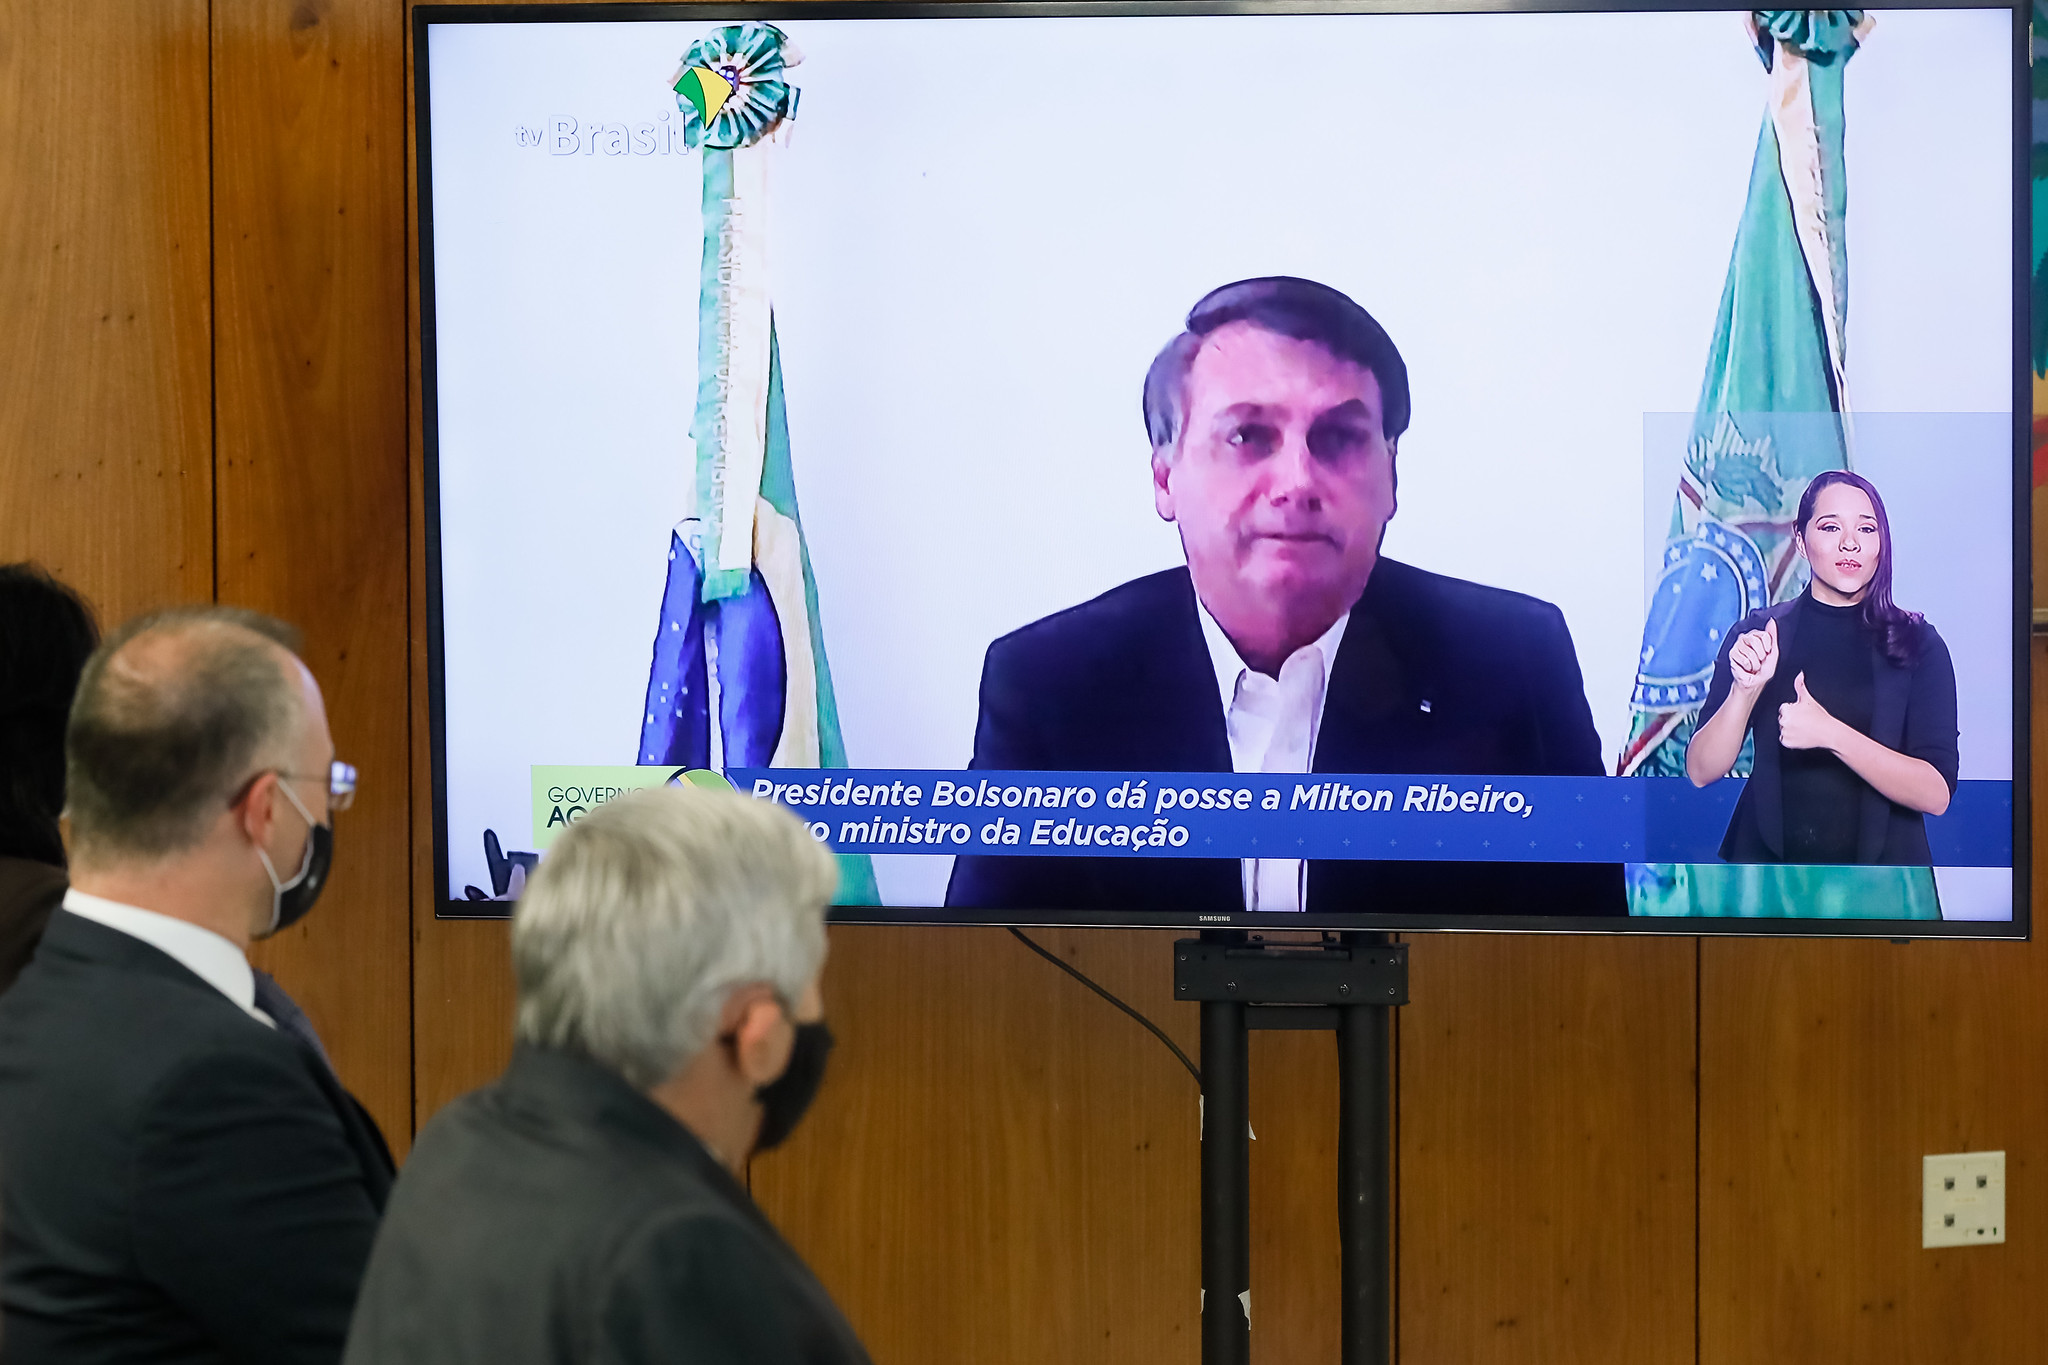 Afastado de aparições públicas, Bolsonaro participa de reuniões e eventos oficiais pela televisão